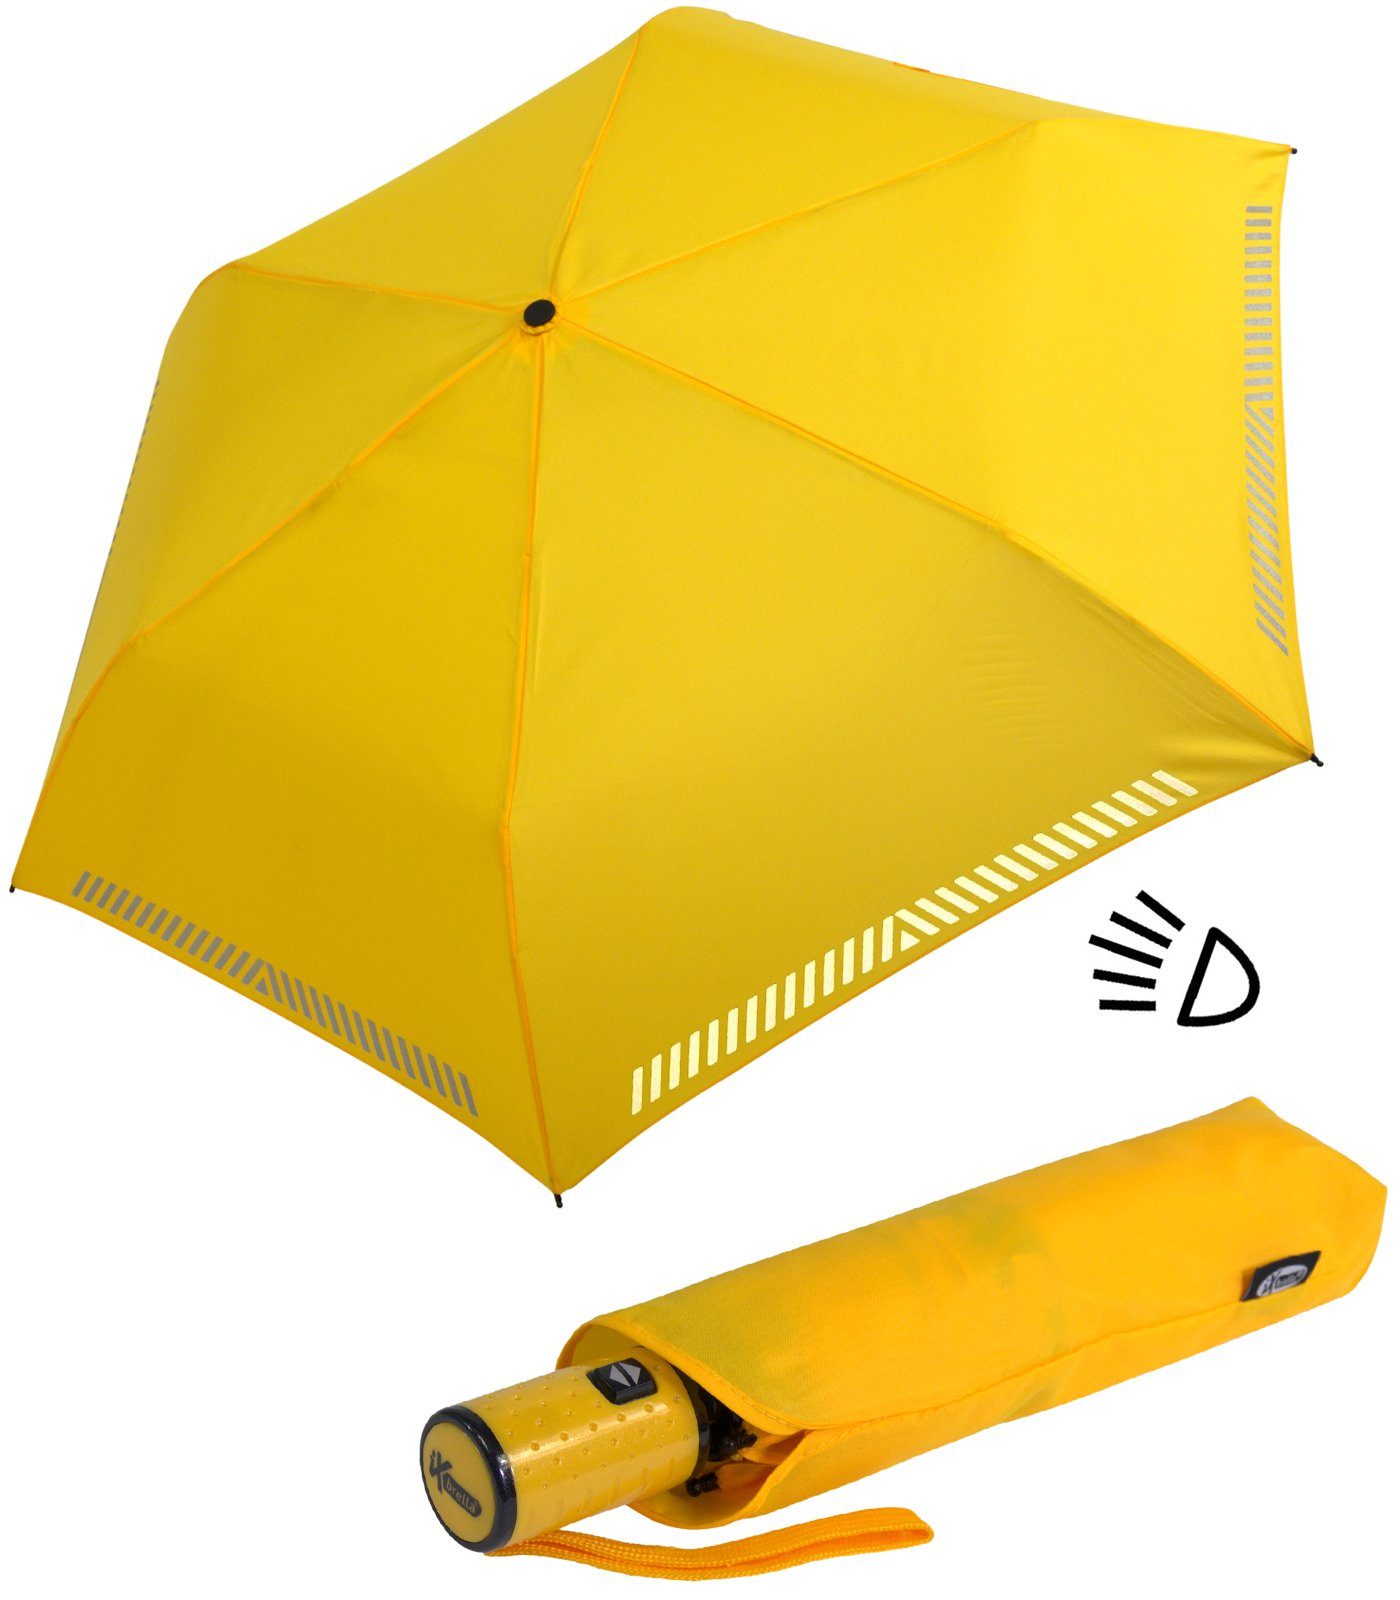 reflektierend, Kinderschirm gelb mit durch Auf-Zu-Automatik, Reflex-Streifen Sicherheit iX-brella Taschenregenschirm -